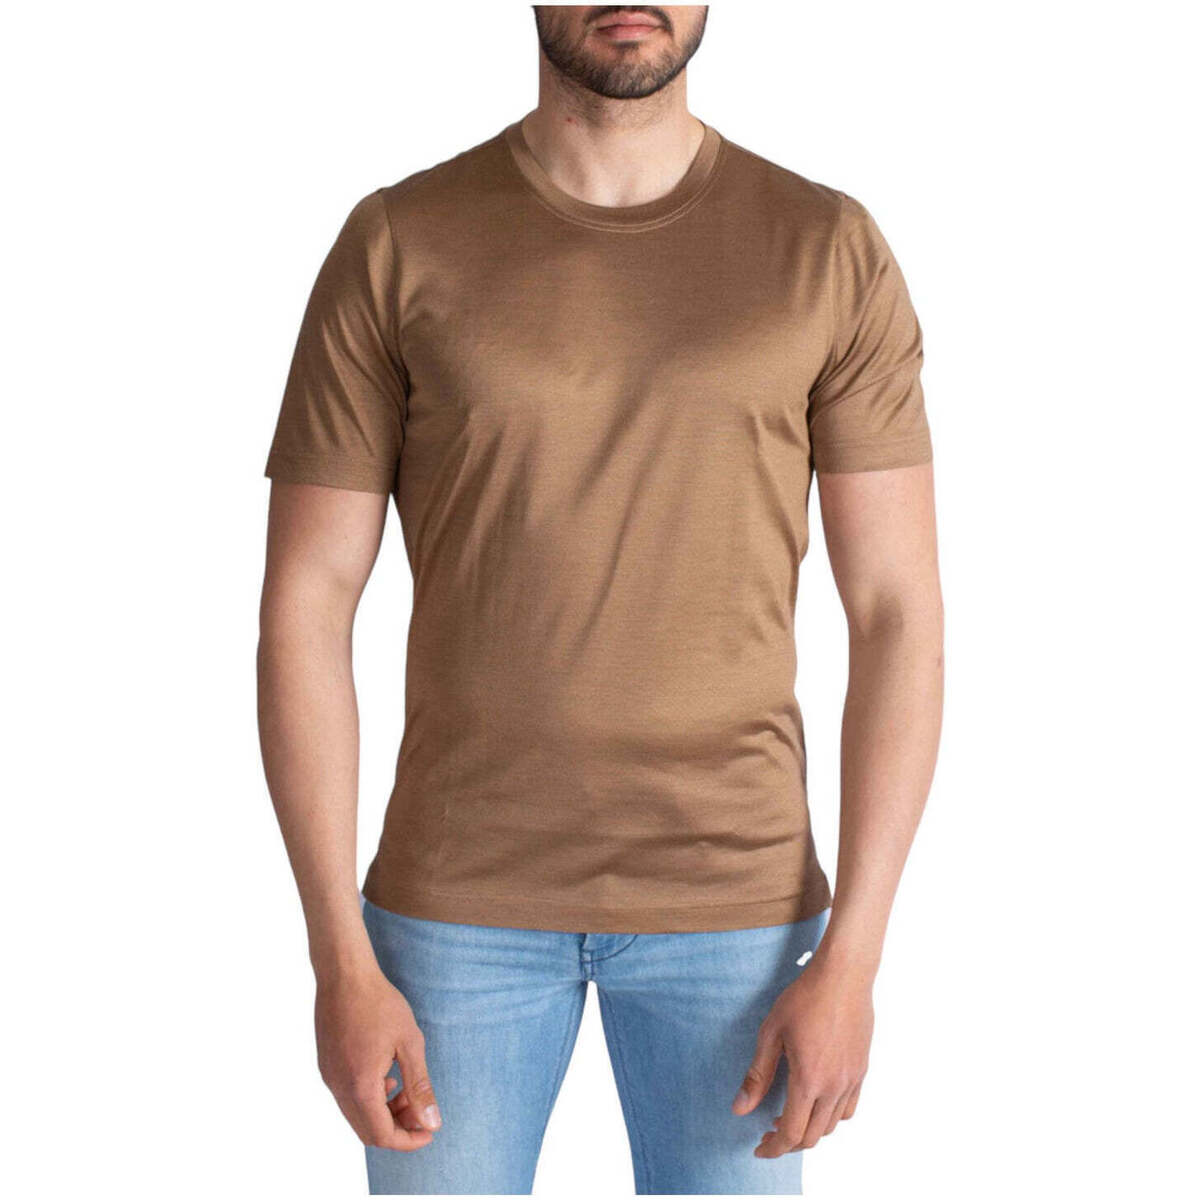 textil Hombre Tops y Camisetas Gran Sasso  Marrón